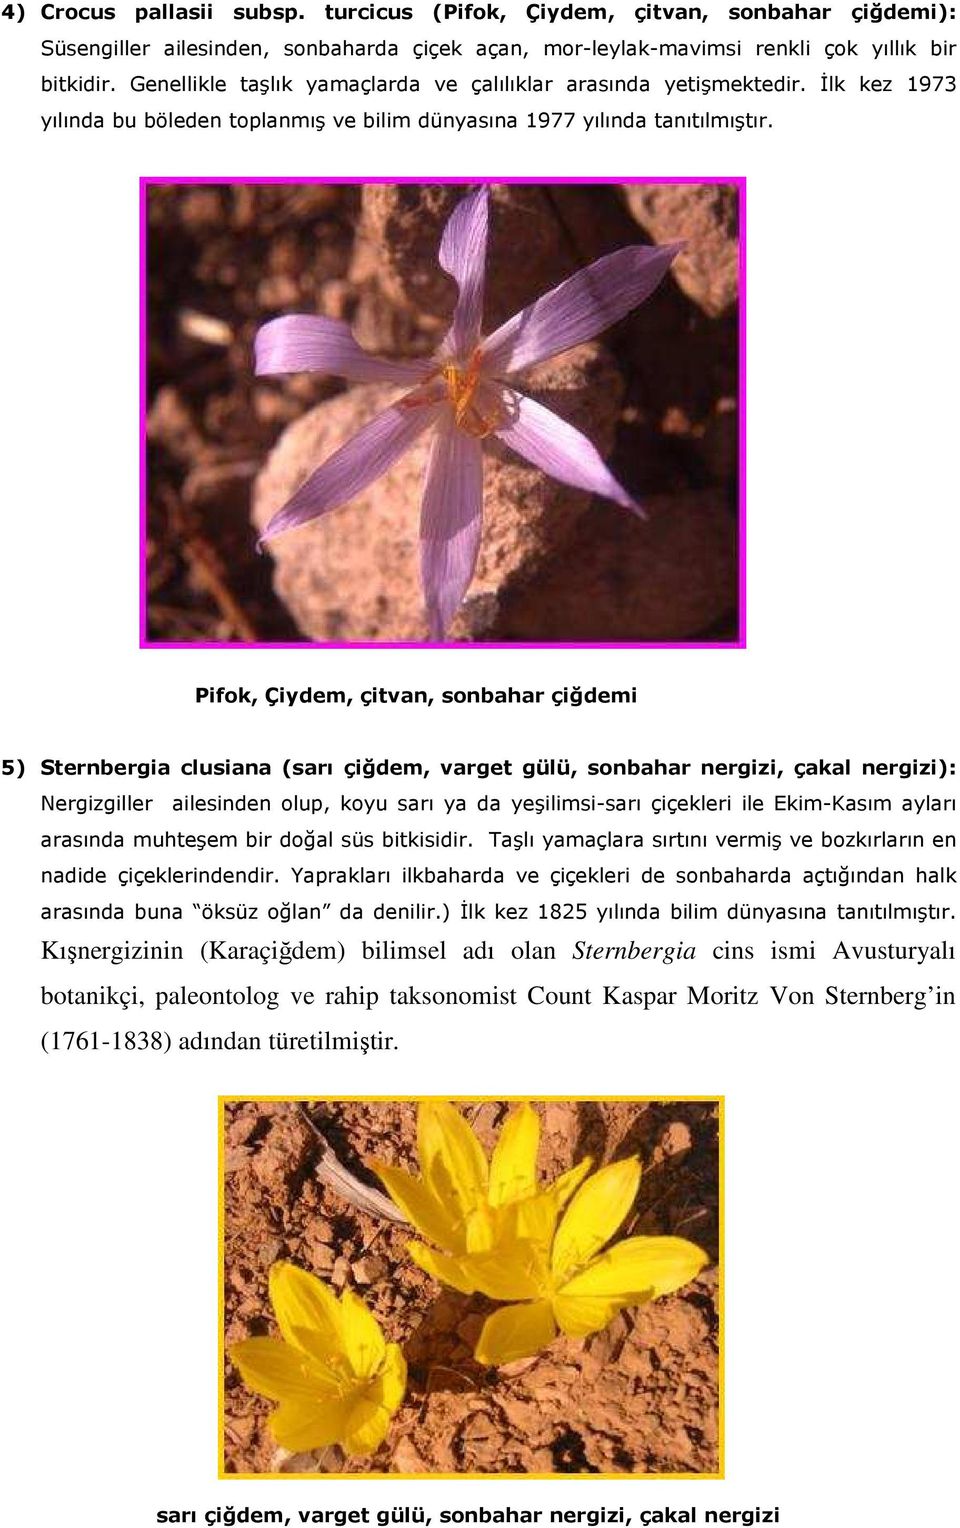 Pifok, Çiydem, çitvan, sonbahar çiğdemi 5) Sternbergia clusiana (sarı çiğdem, varget gülü, sonbahar nergizi, çakal nergizi): Nergizgiller ailesinden olup, koyu sarı ya da yeşilimsi-sarı çiçekleri ile